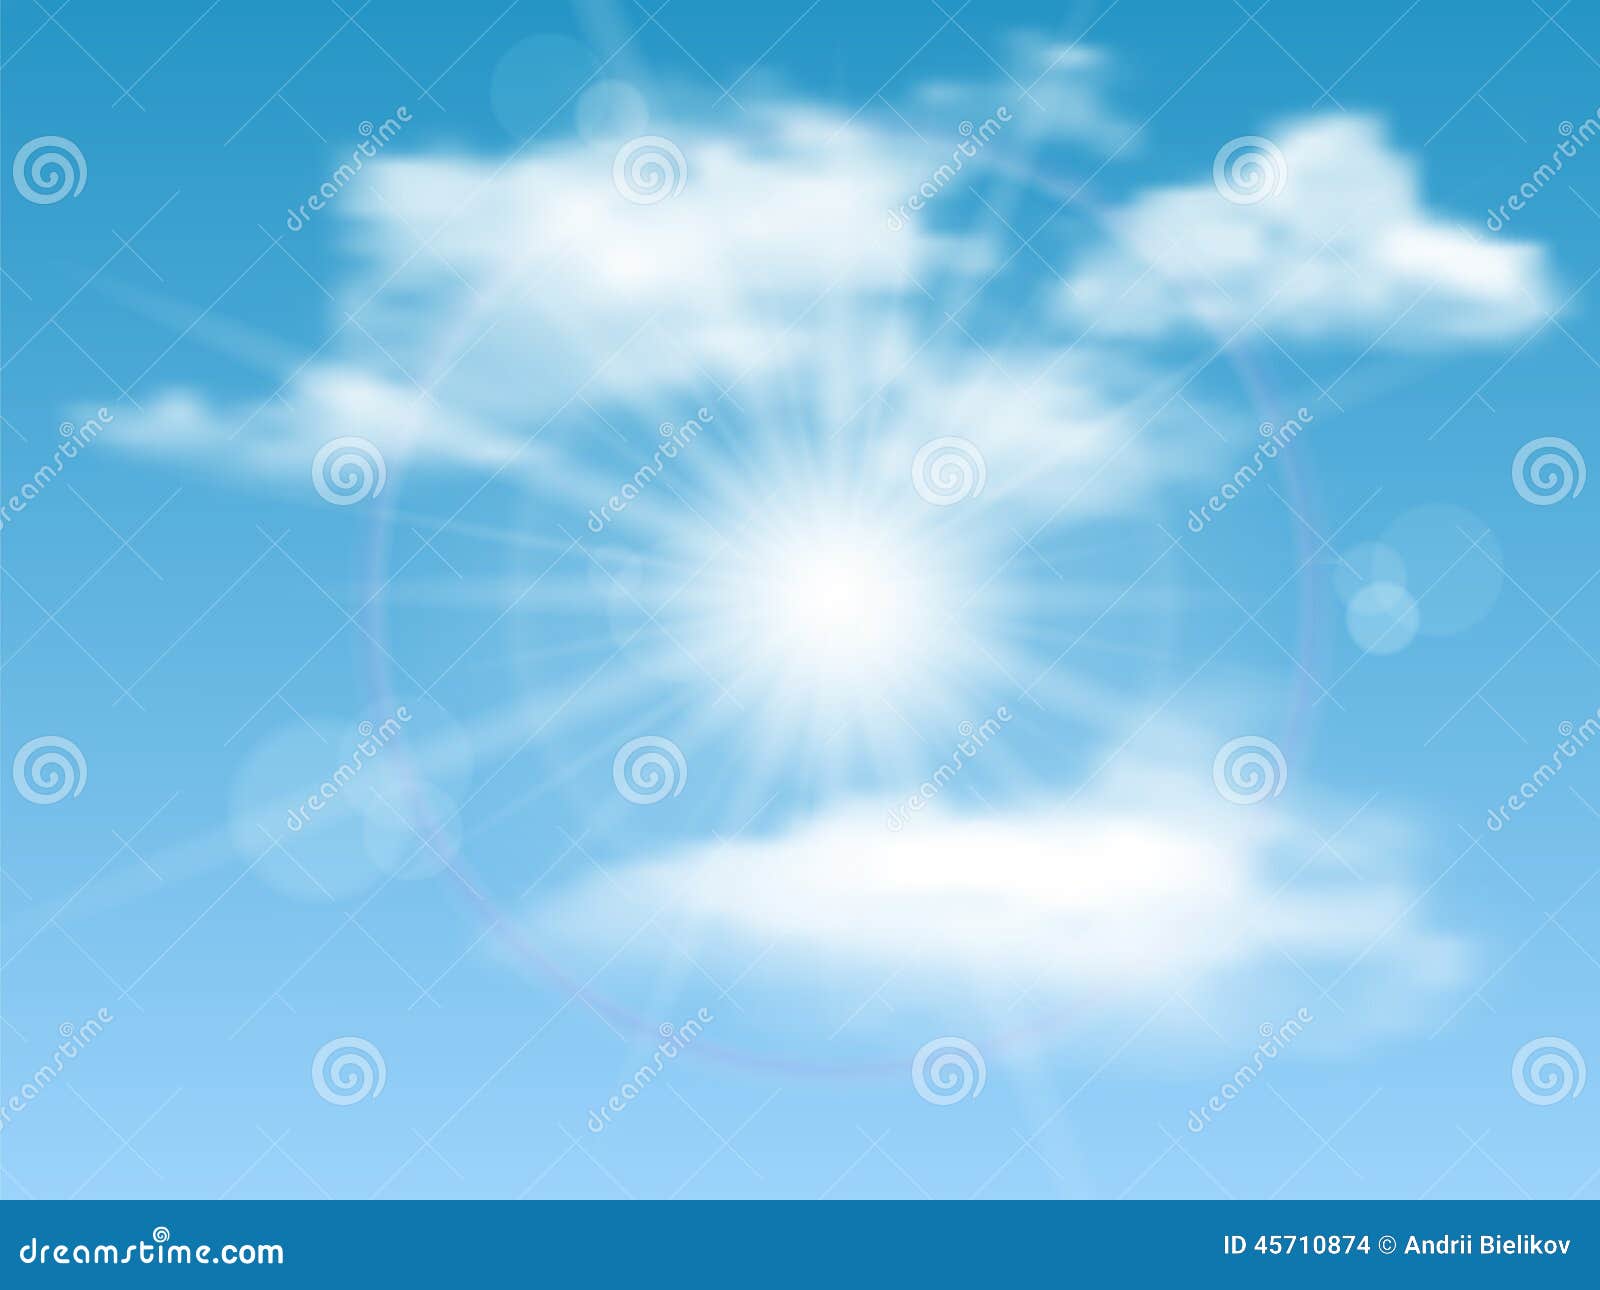 Солнце еще облаков не задело трава. Фон небо солнце вектор. Sky Blue Shine Lens Effect. Купить обои с графичным изображением солнца в облаках.